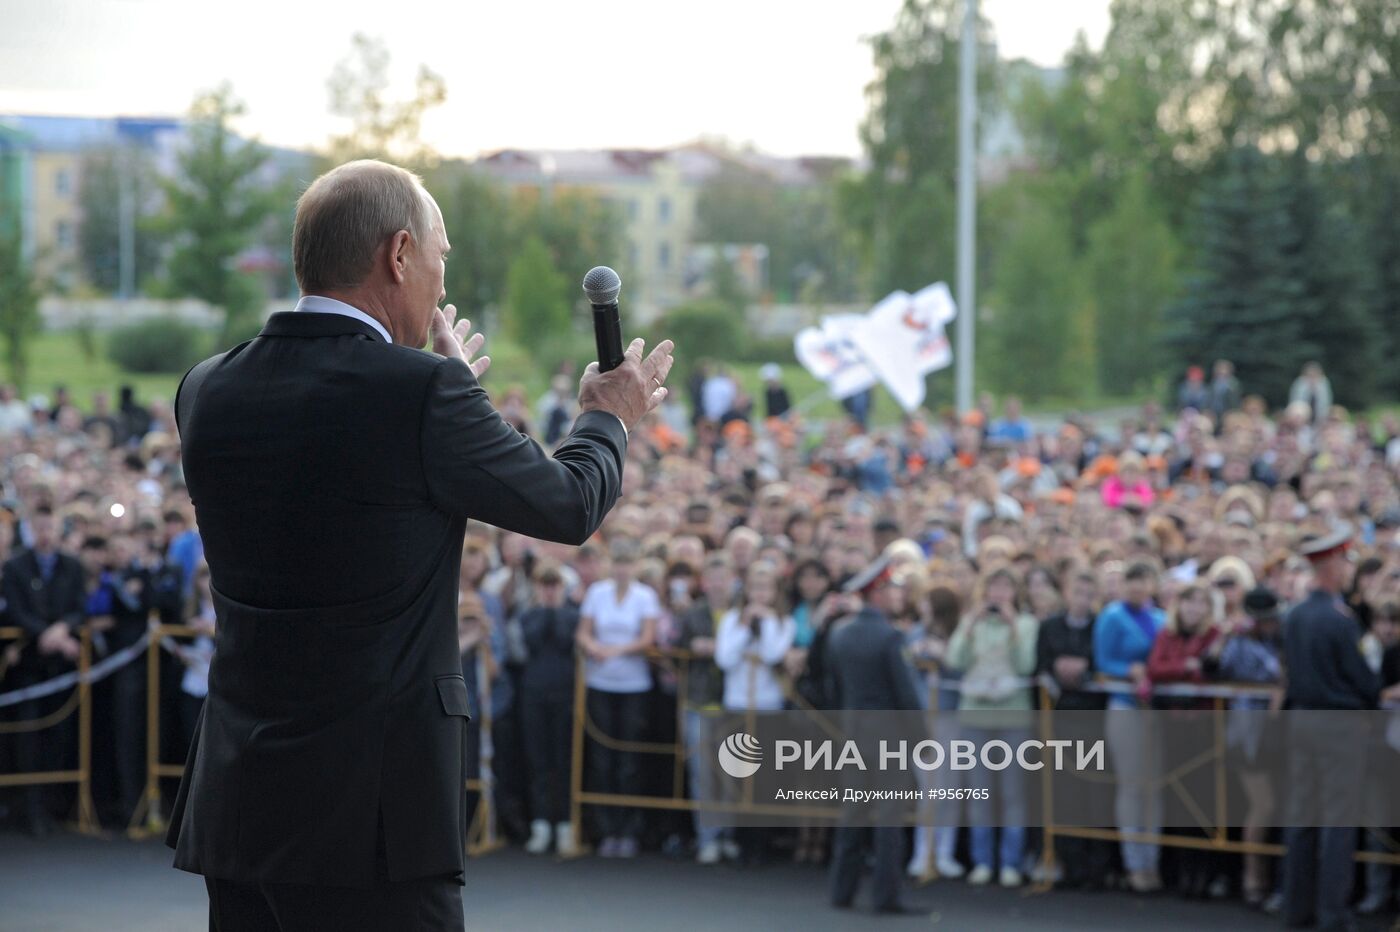 Рабочая поездка В.Путина в Уральский Федеральный округ